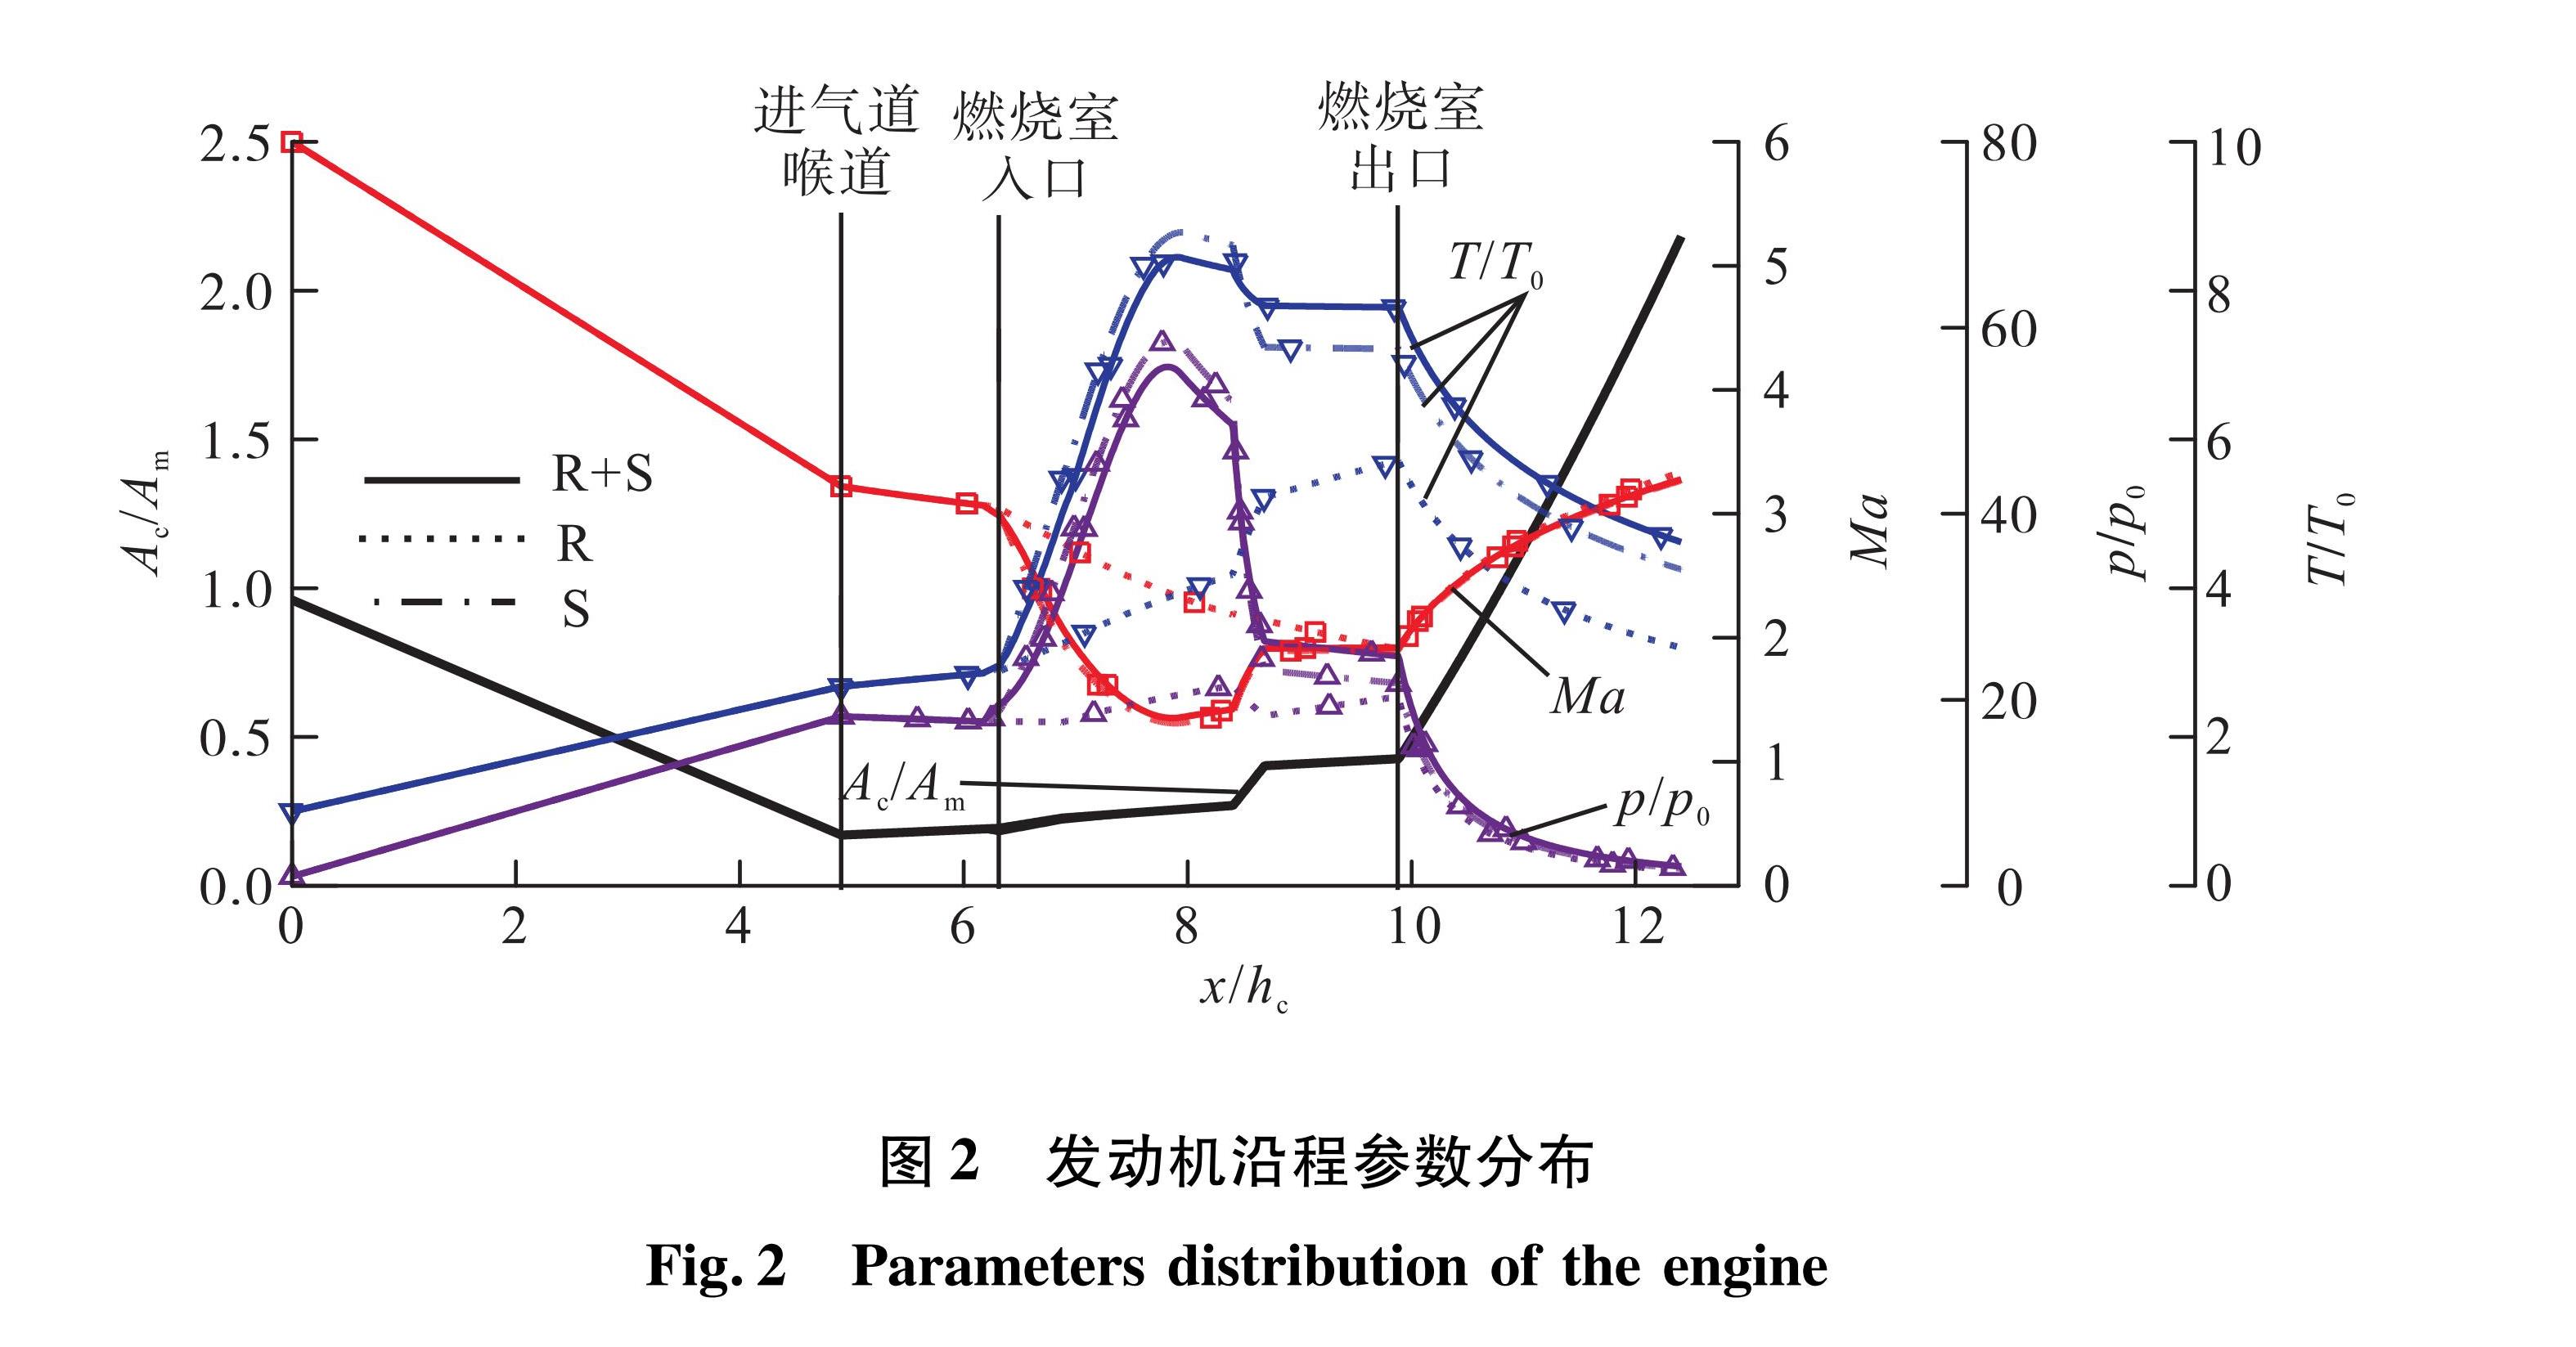 图2 发动机沿程参数分布<br/>Fig.2 Parameters distribution of the engine